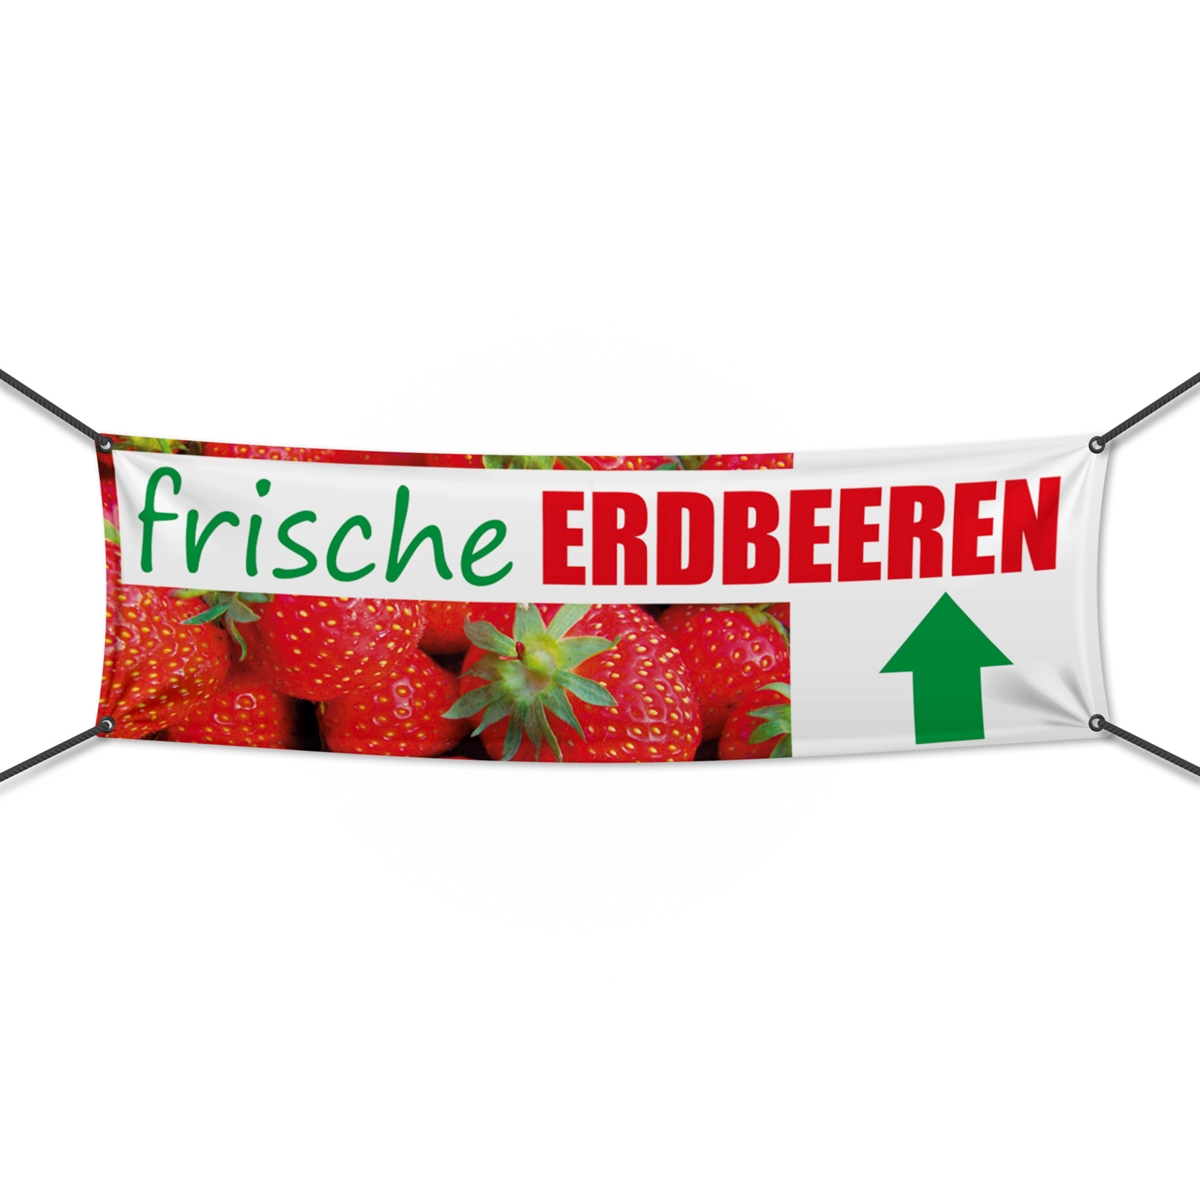 300 x 100 cm | Frische Erdbeeren Werbebanner